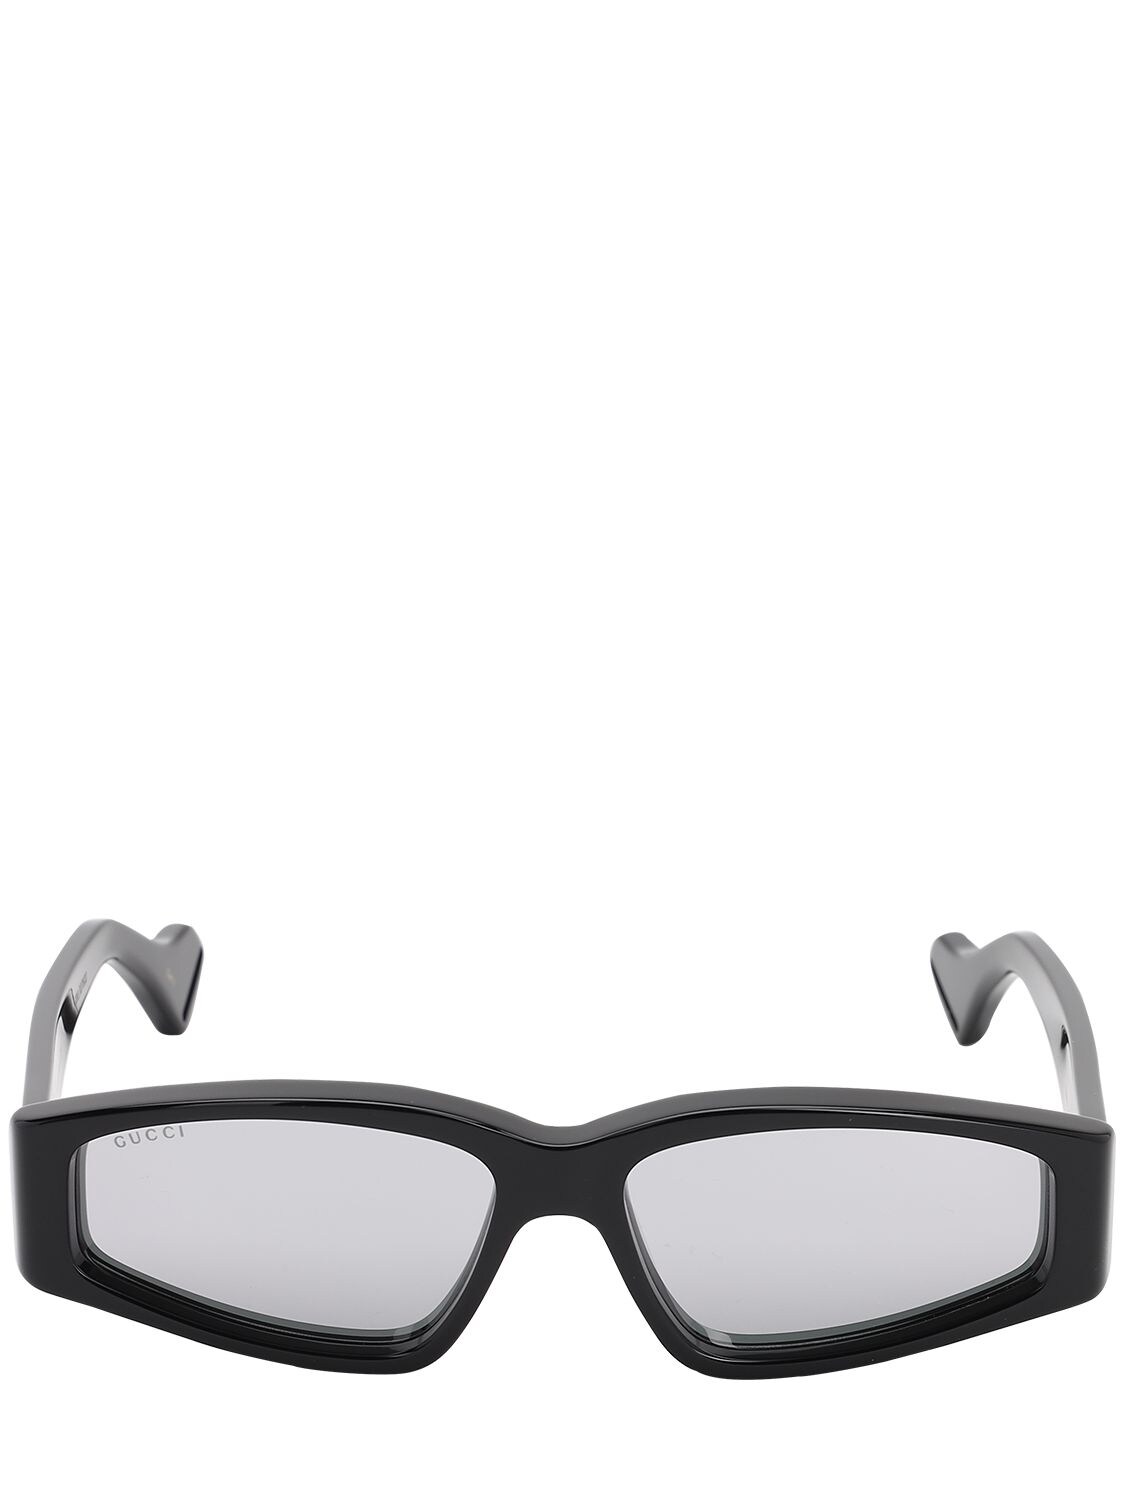 Gucci Squared Sunglasses W/ Mirror Lenses In Black,mirror